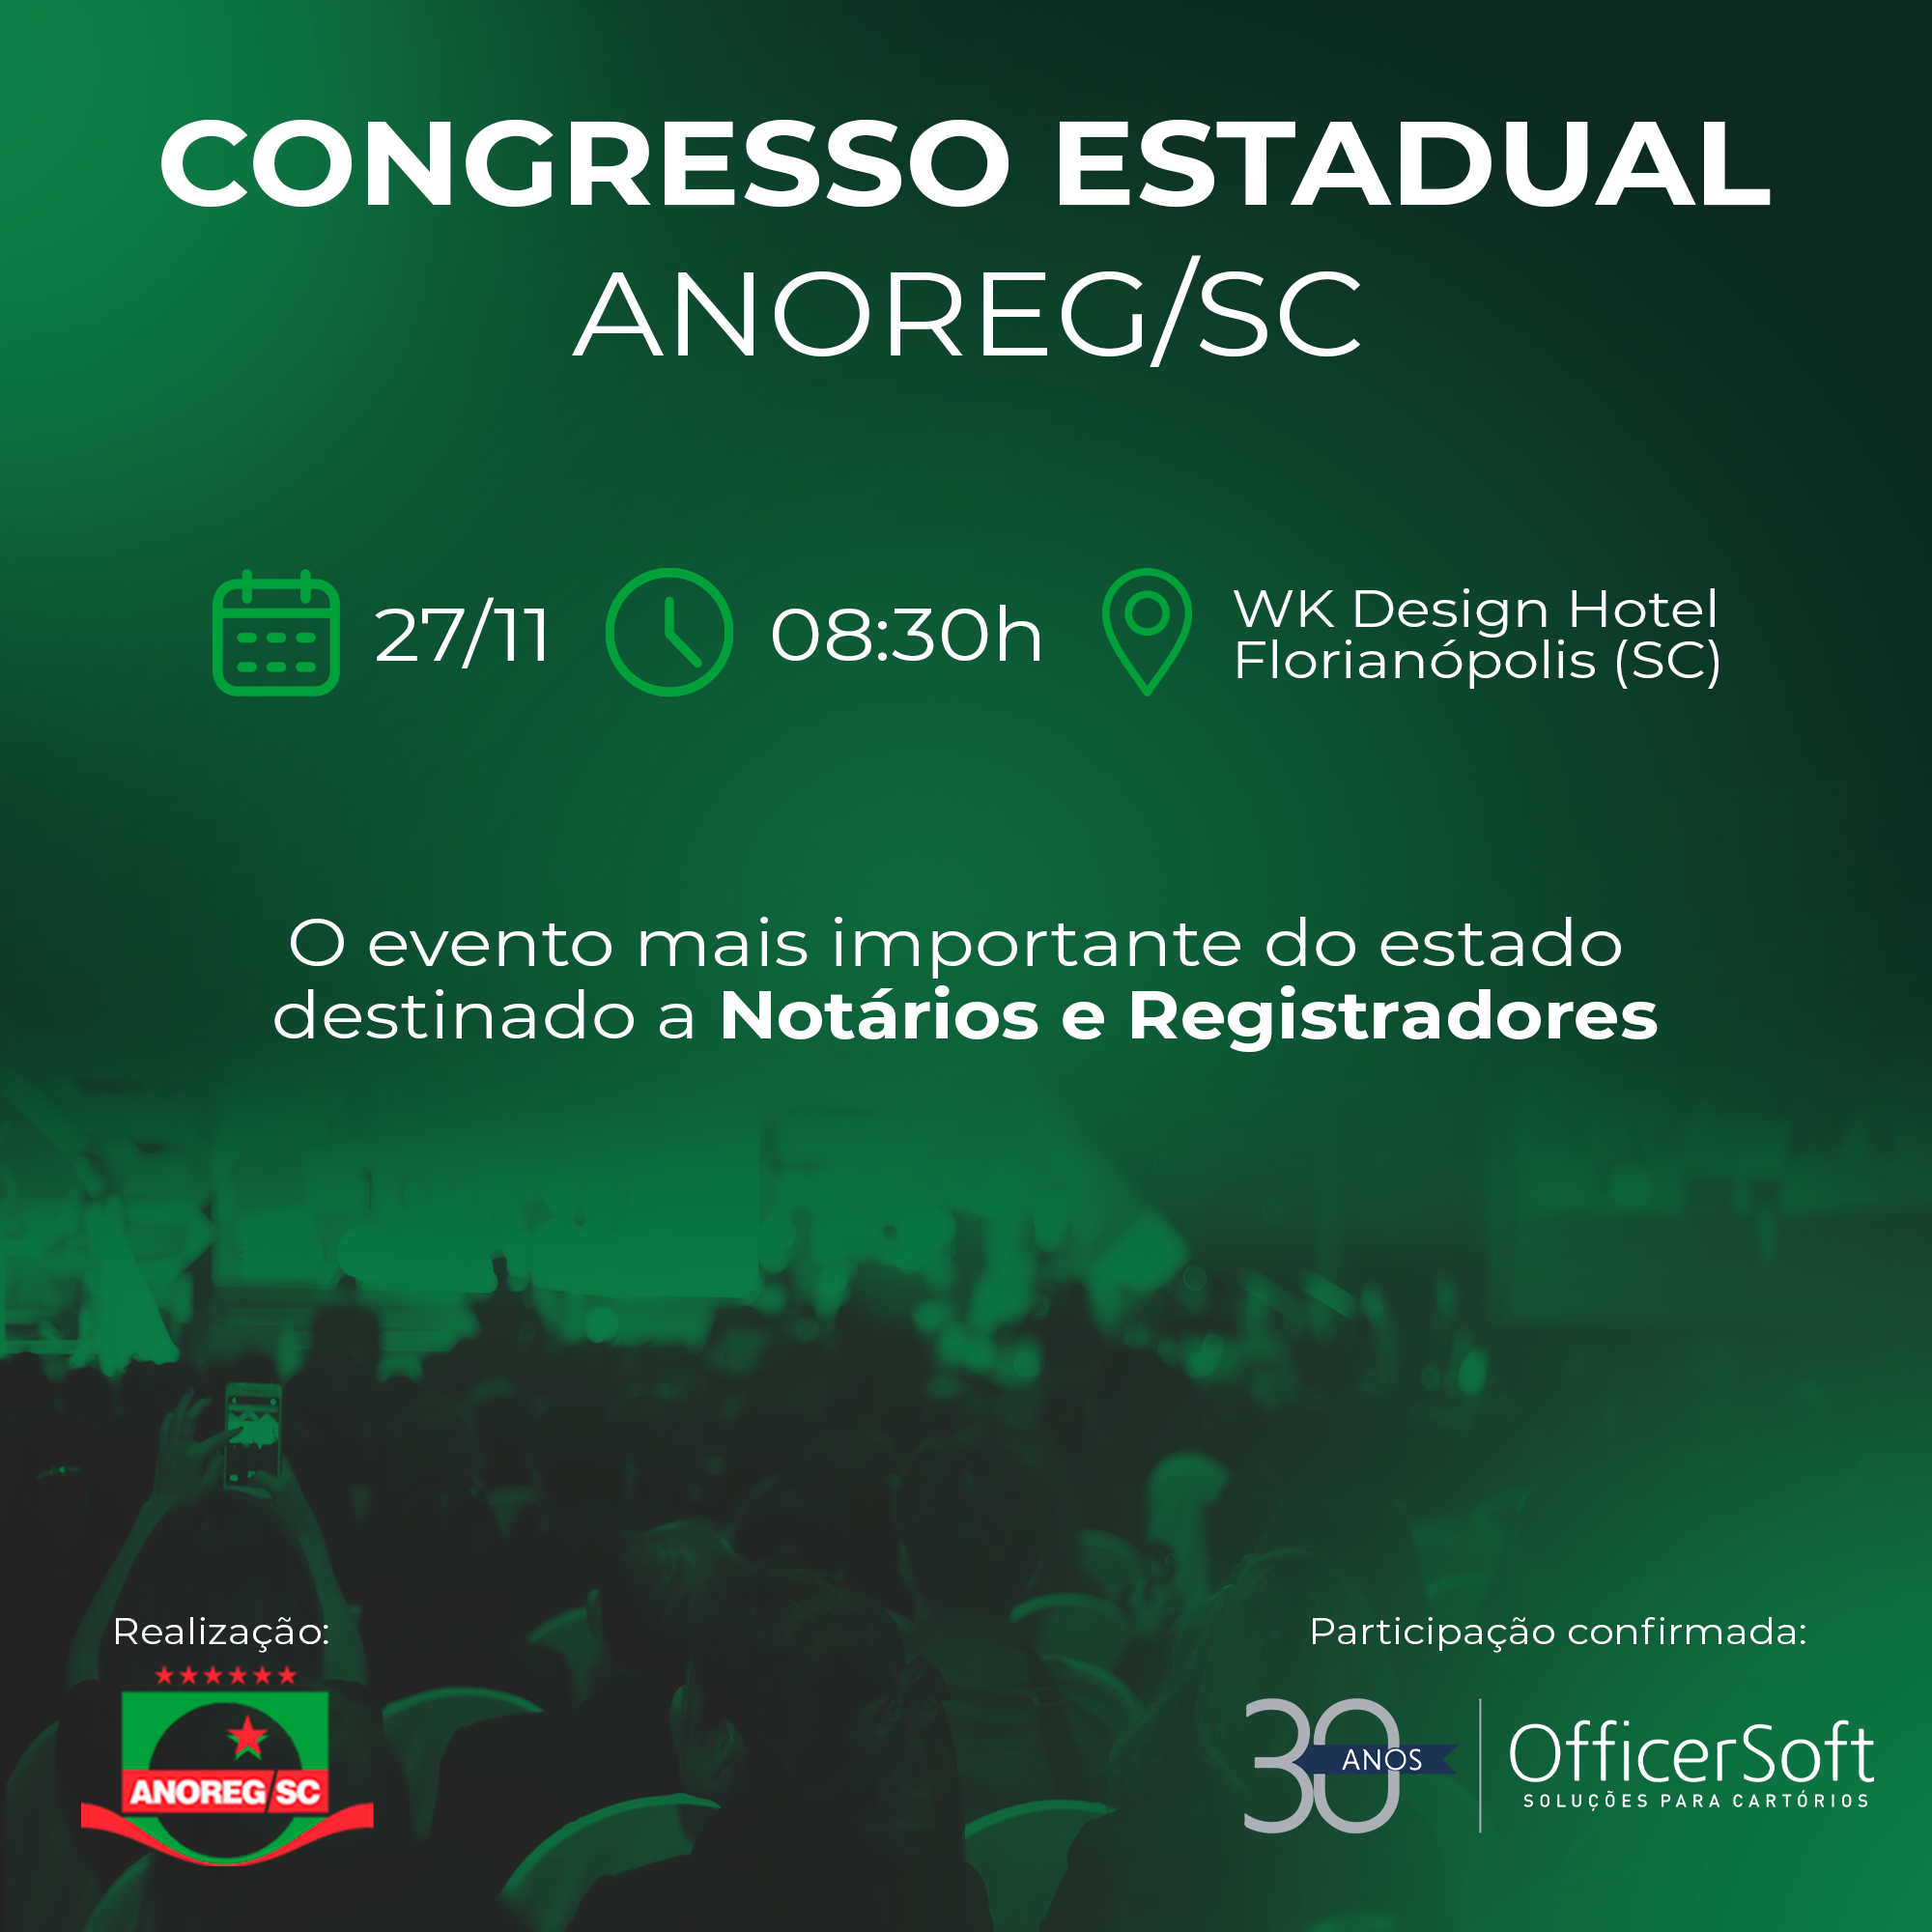 Congresso Estadual ANOREG/SC